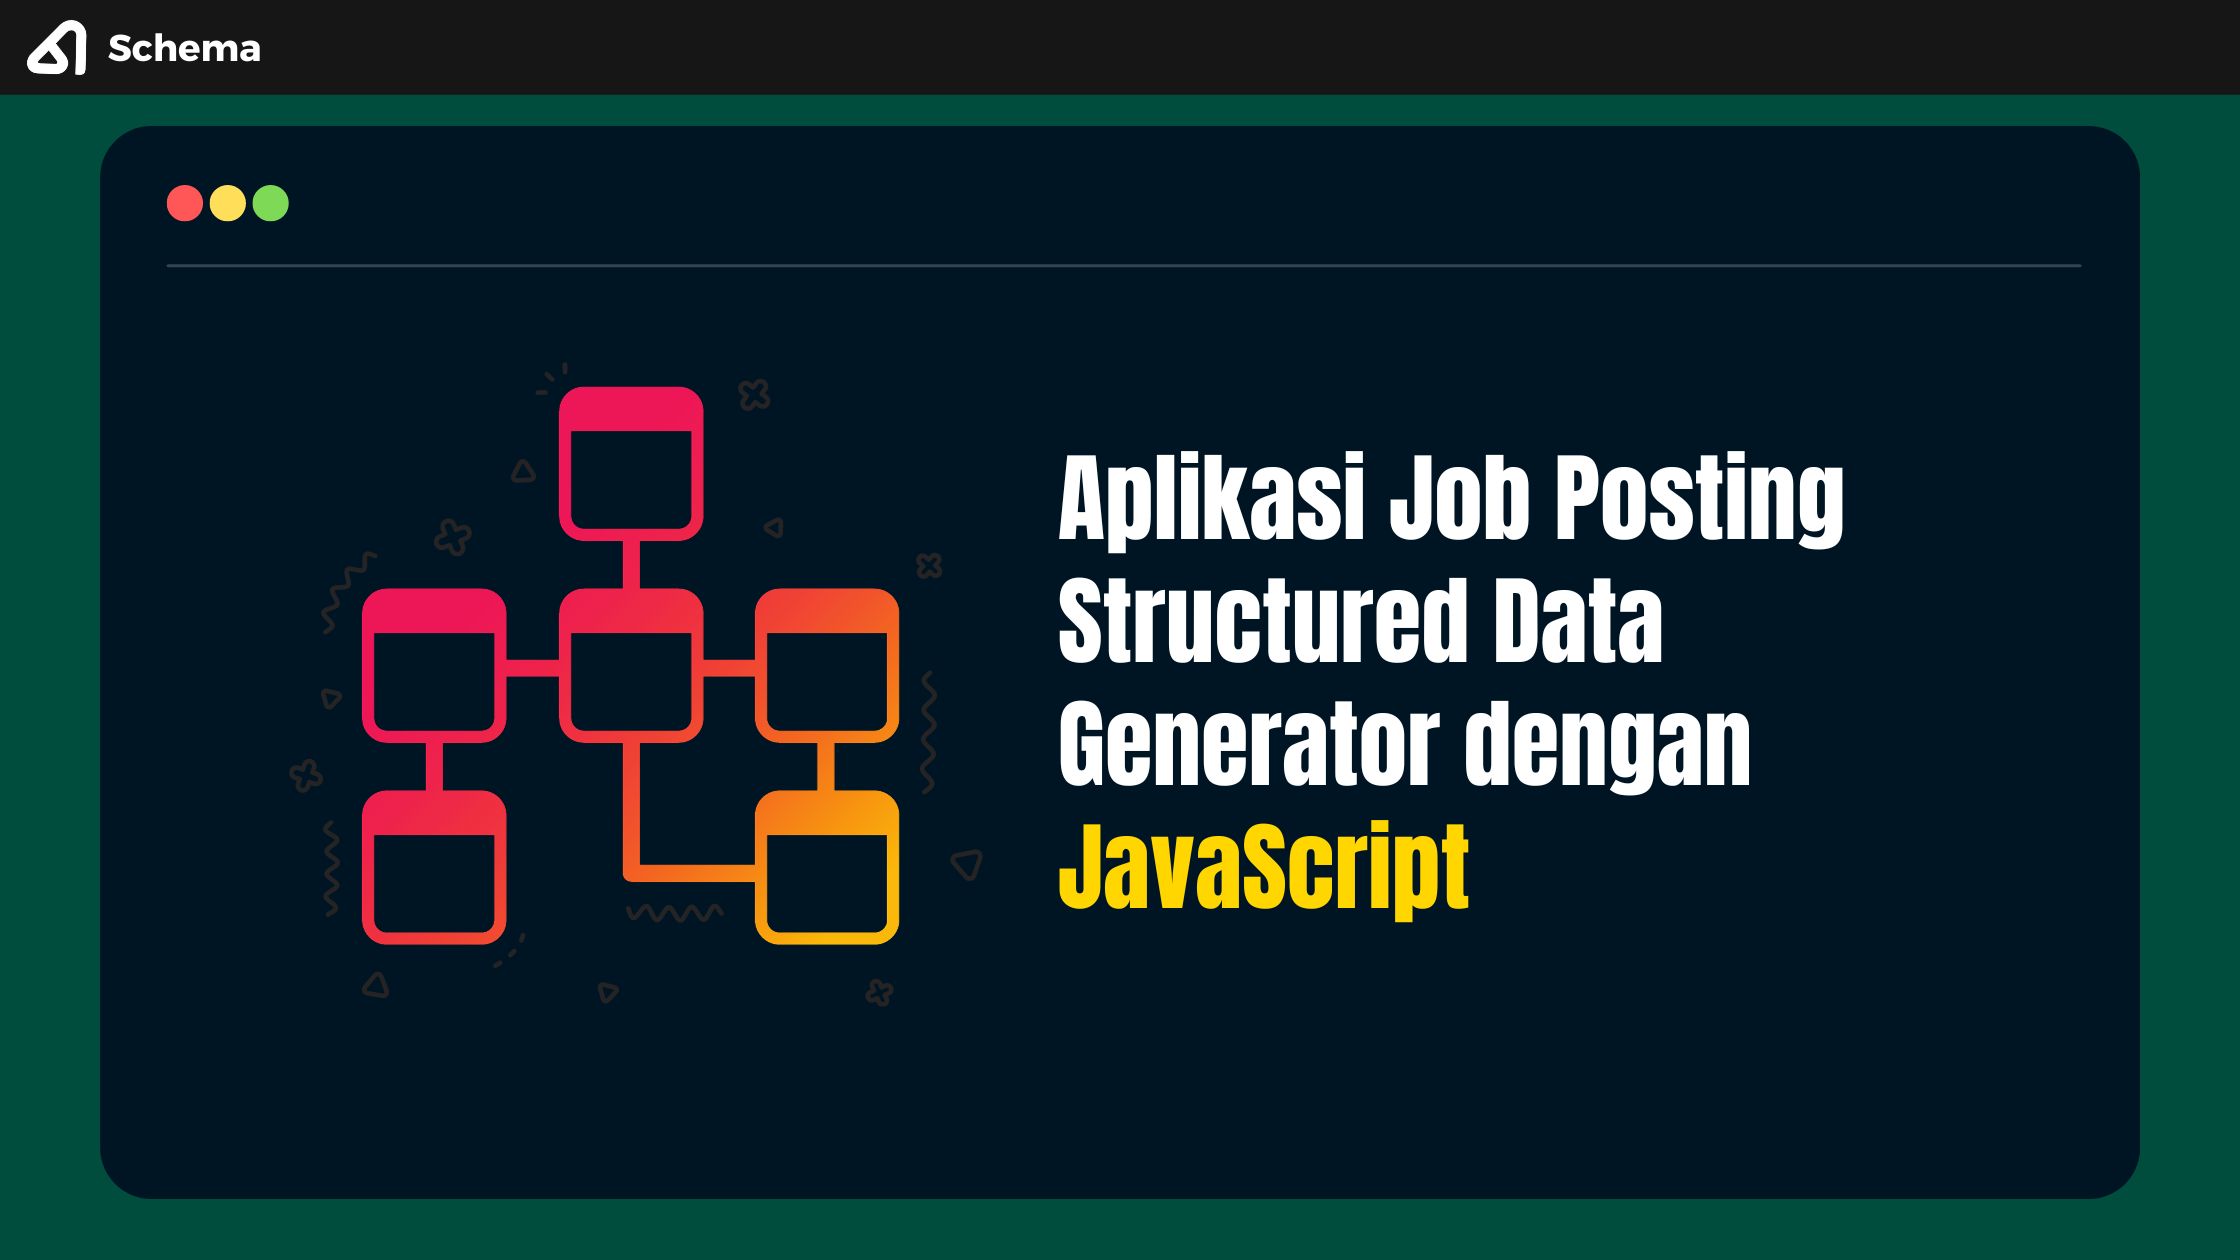 Aplikasi Job Posting Structured Data Generator dengan JavaScript